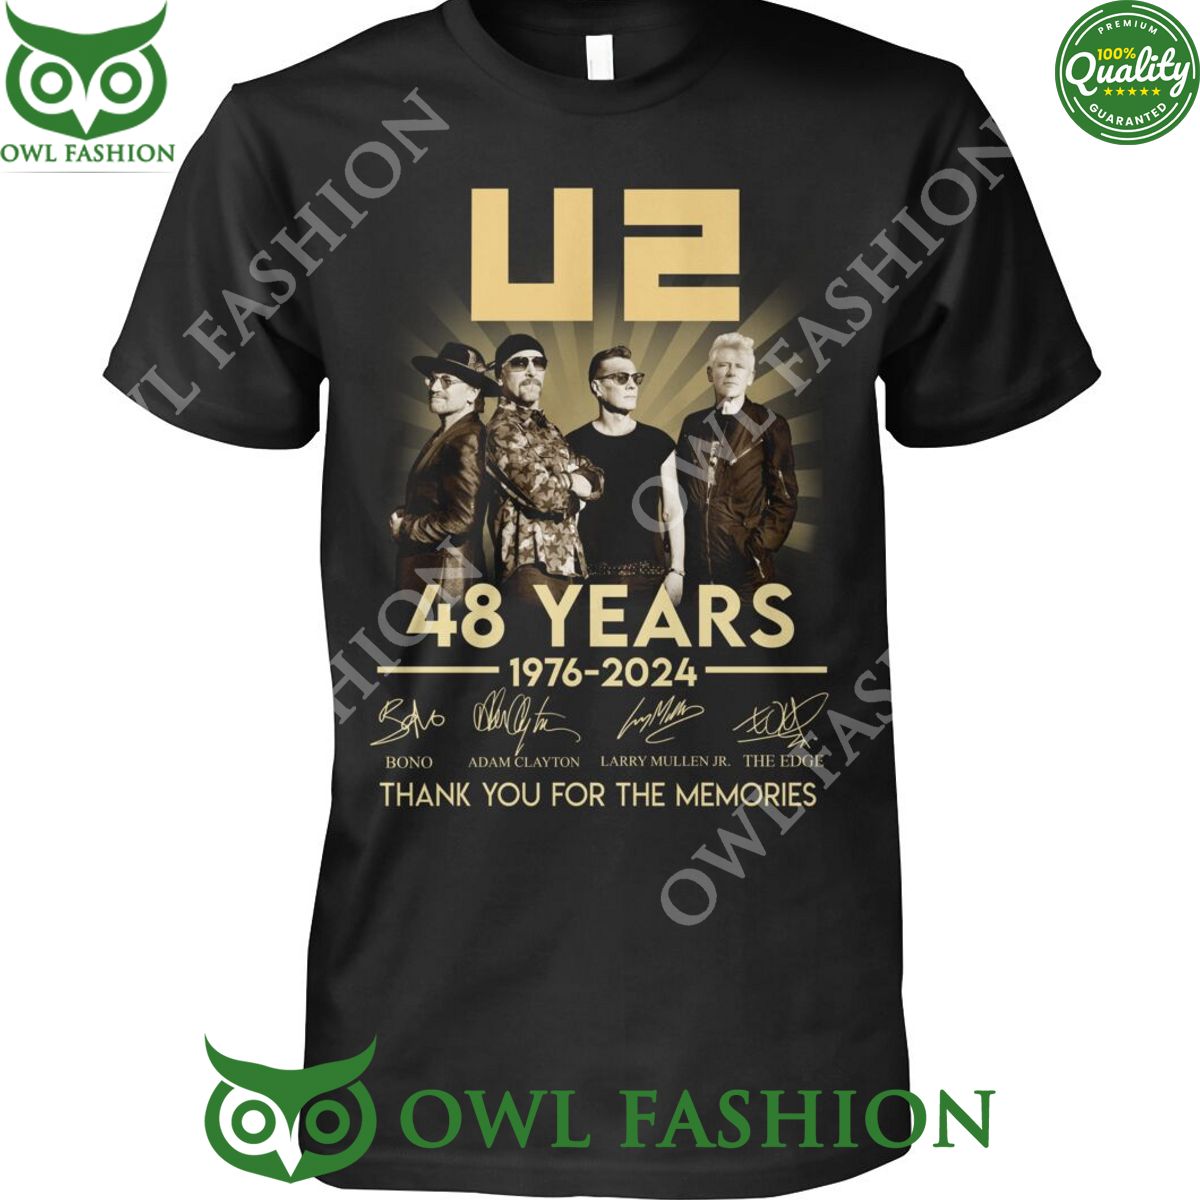 U2 band 48 years 1976 anniversary Thank you memories t shirt